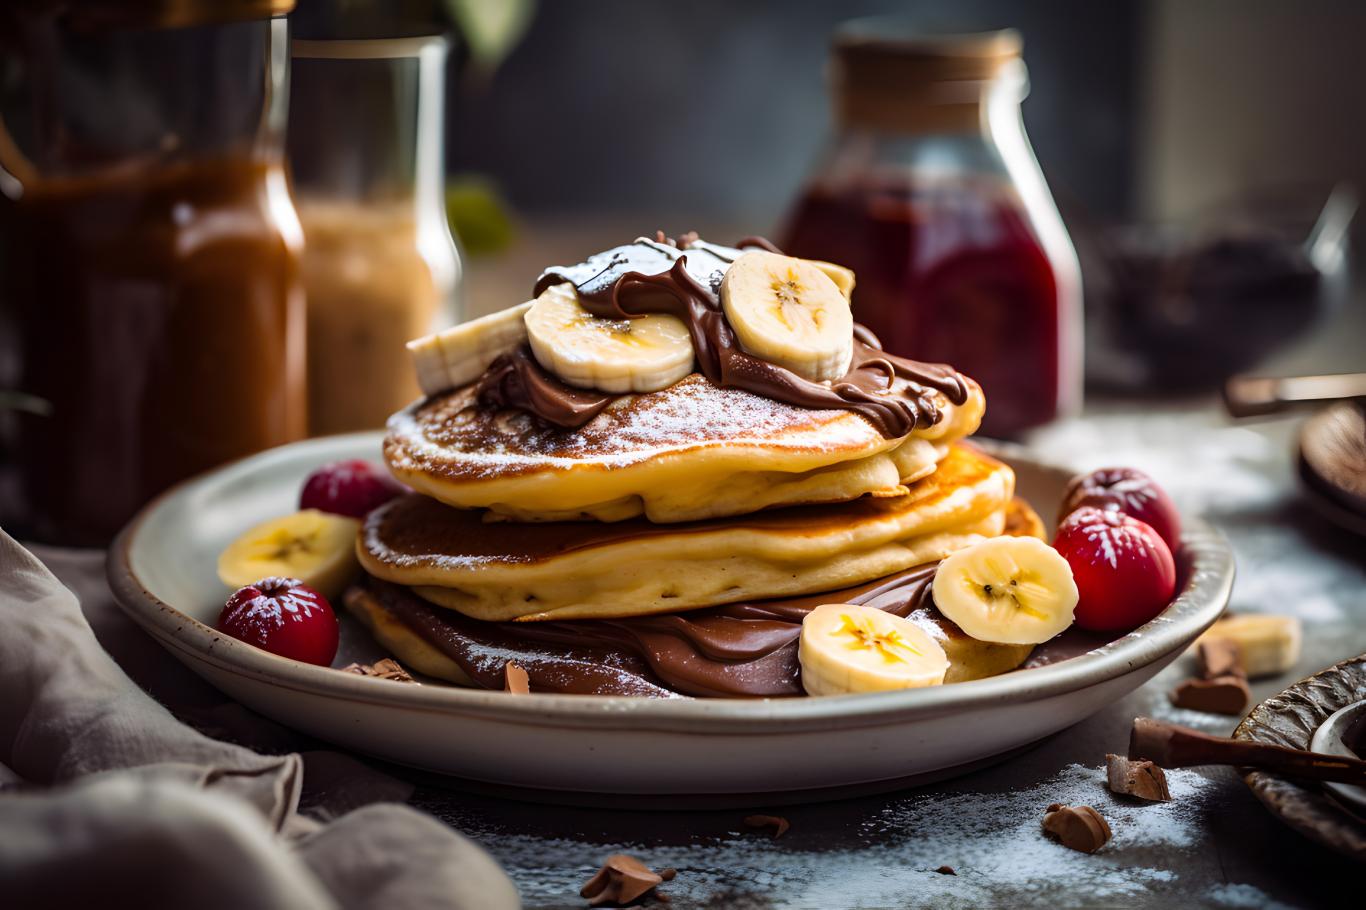 pour un petit déjeuner ou un goûter gourmand, cyril lignac partage sa recette de pancakes fourrés choco-banane